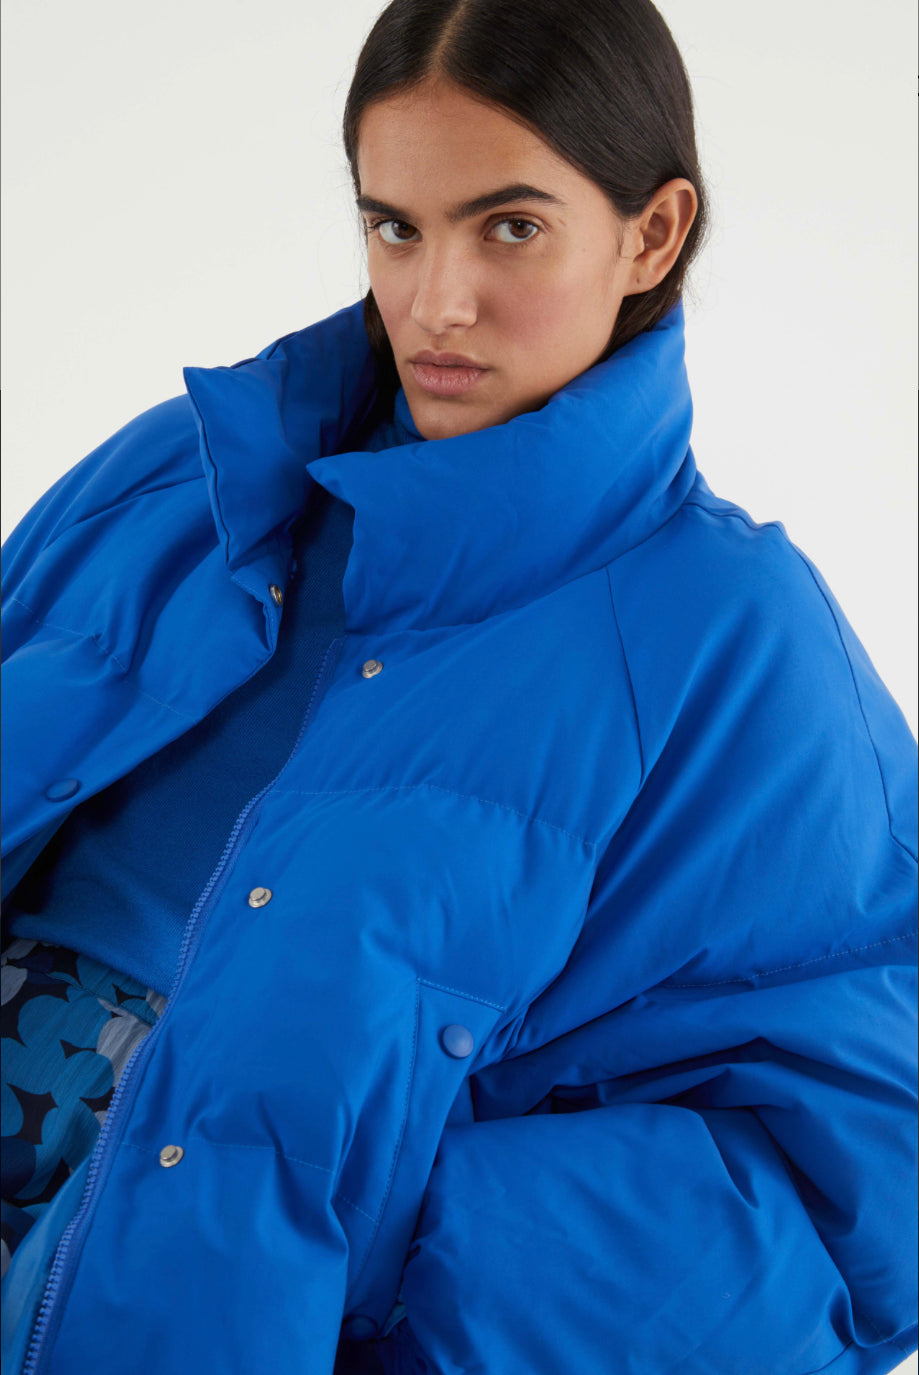 Blue oversized down jacket